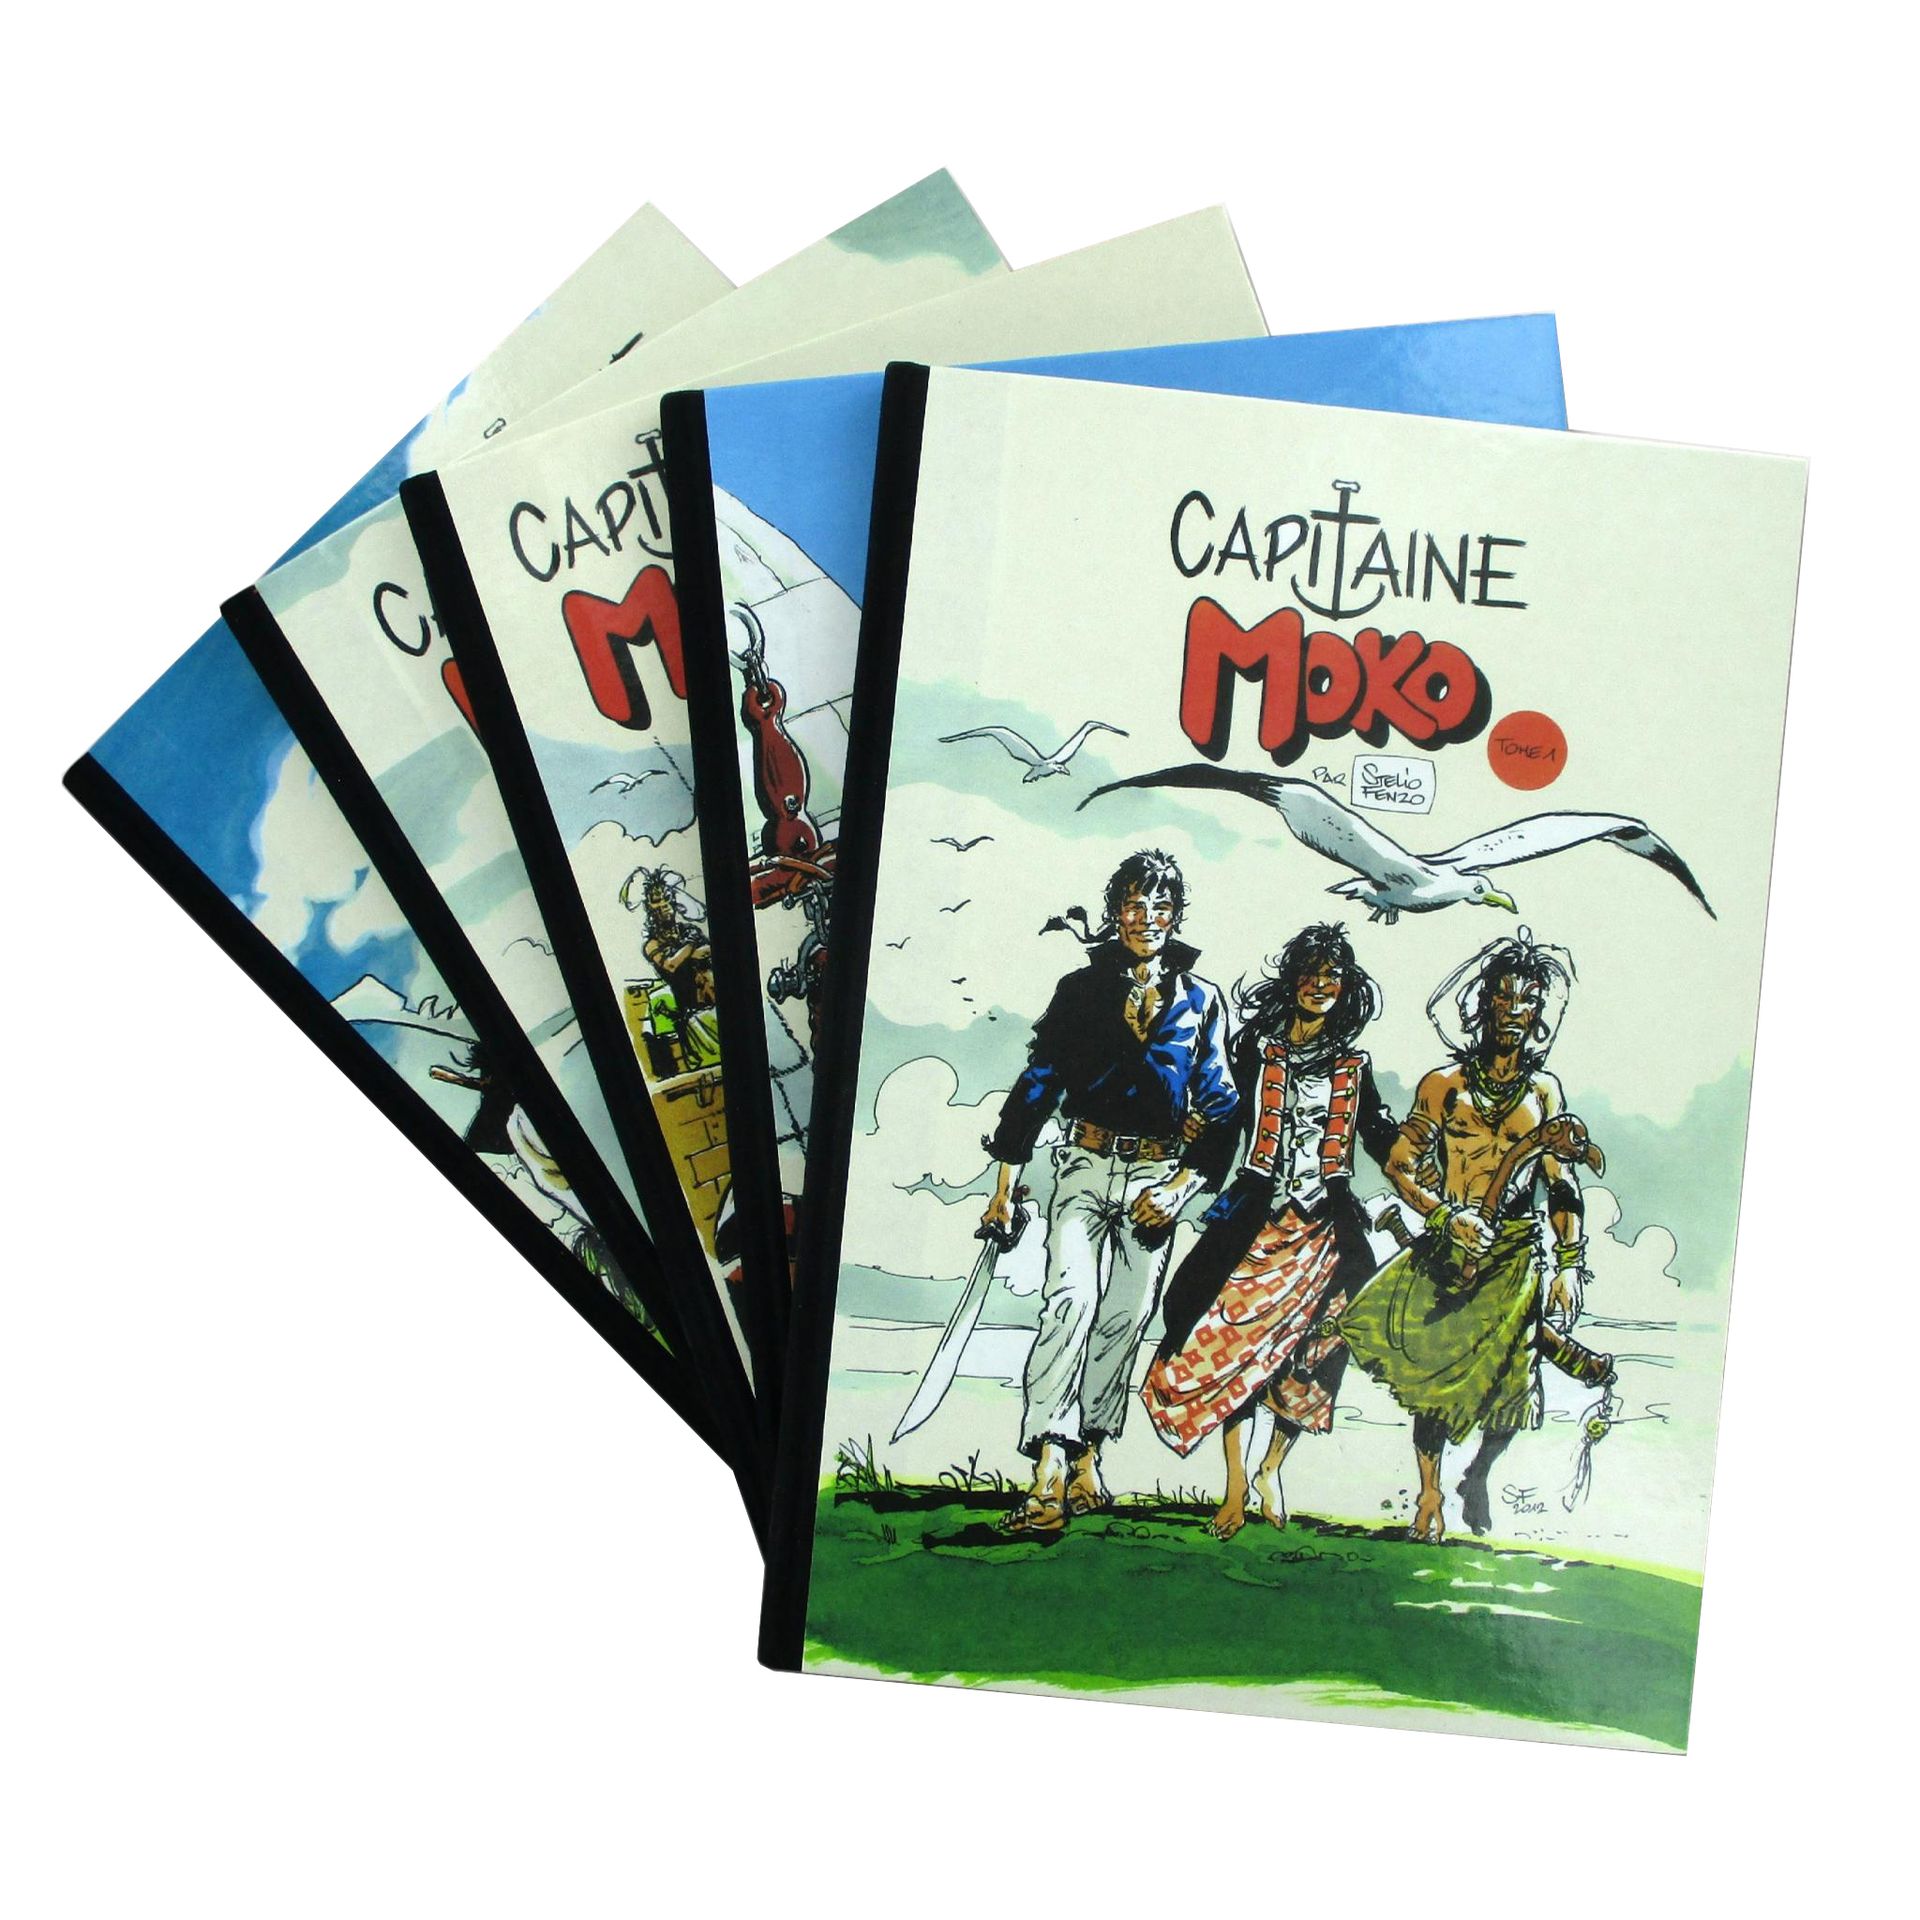 Null FENZO - Moko船长
全系列共5卷，与2013年海盗出版社制作的完整豪华版相对应
限量60张
有编号的副本，配有10个书板（每册2个），其中5&hellip;